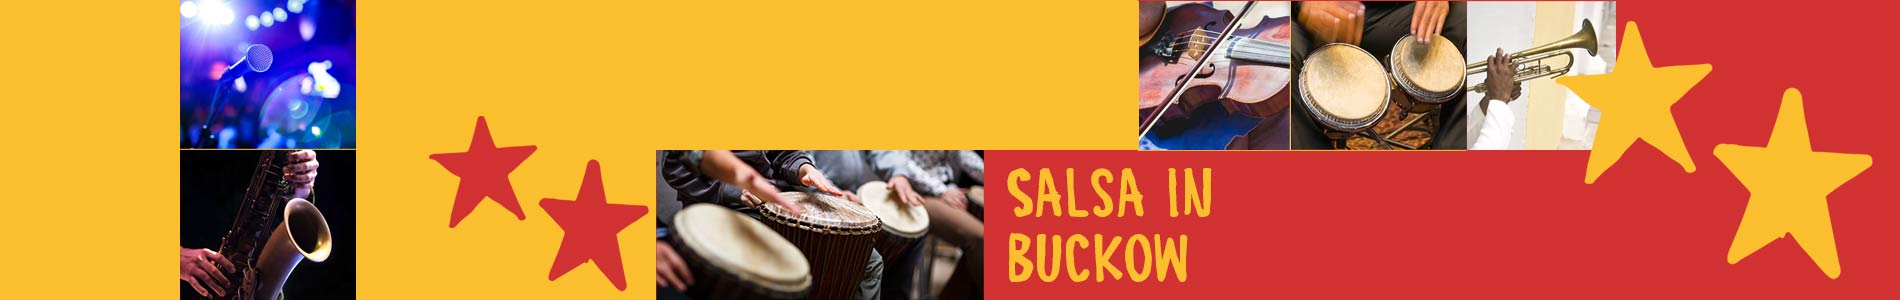 Salsa in Buckow – Salsa lernen und tanzen, Tanzkurse, Partys, Veranstaltungen